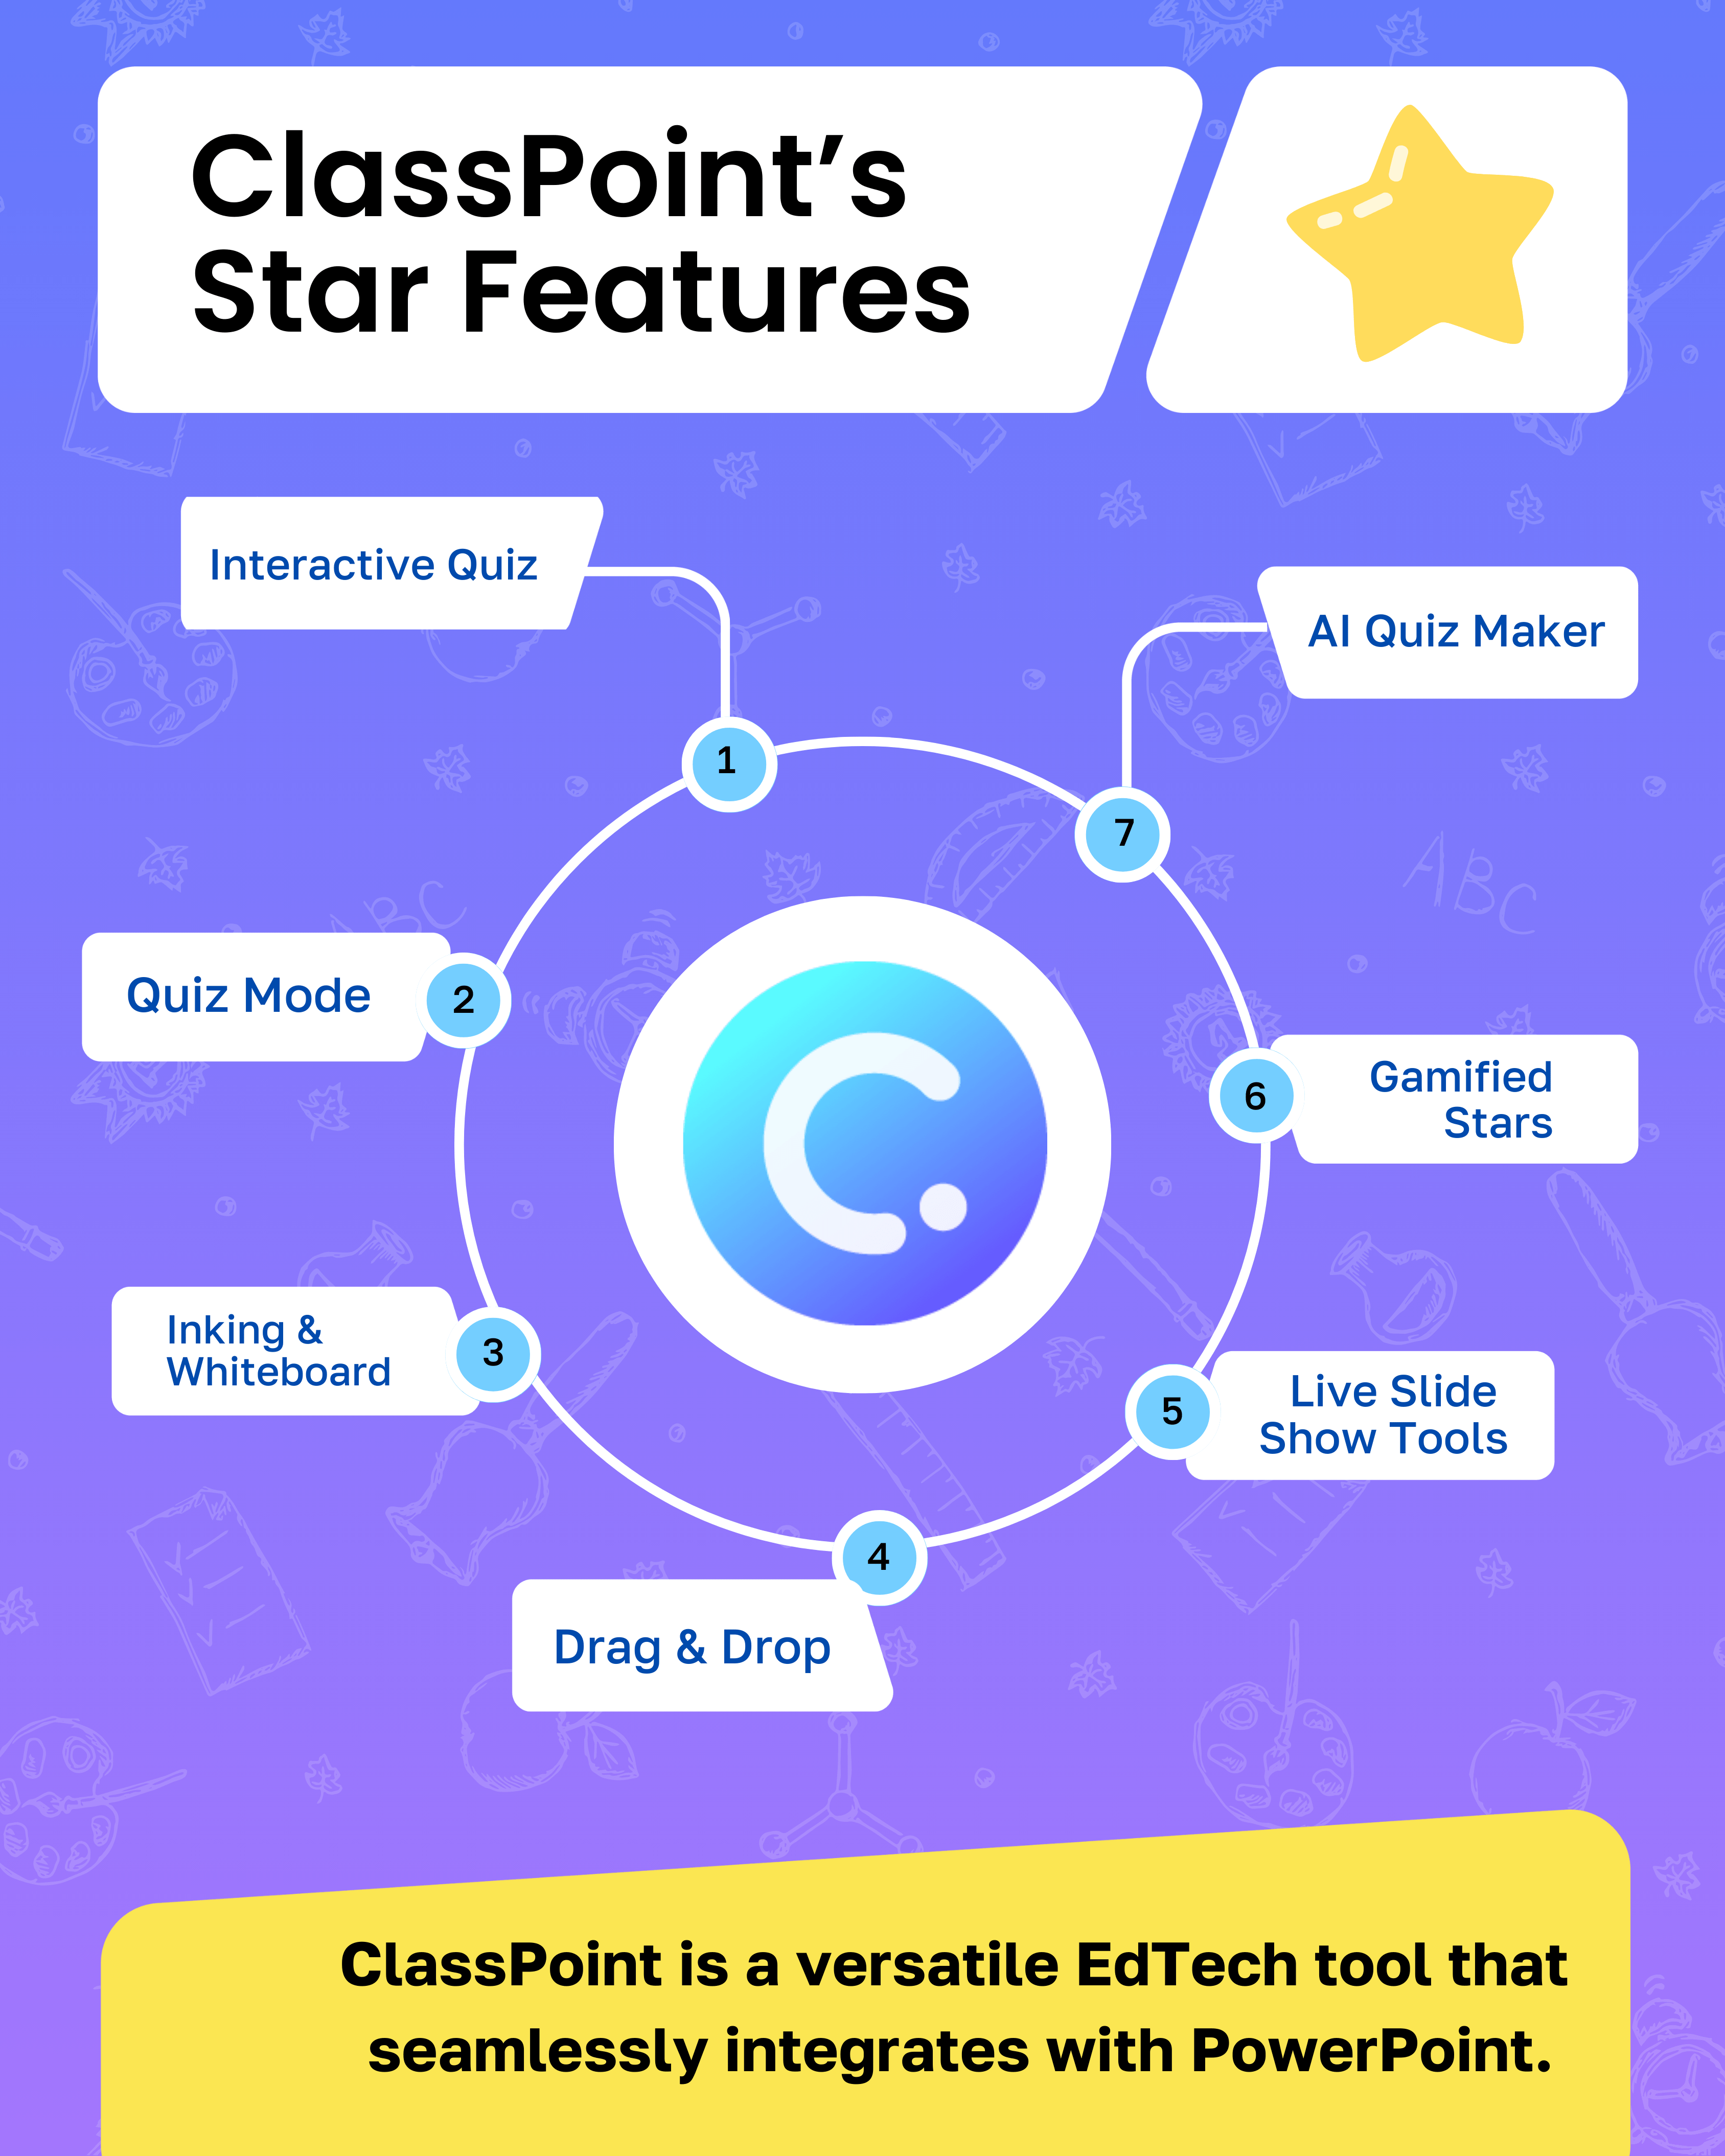 Características estrella de ClassPoint